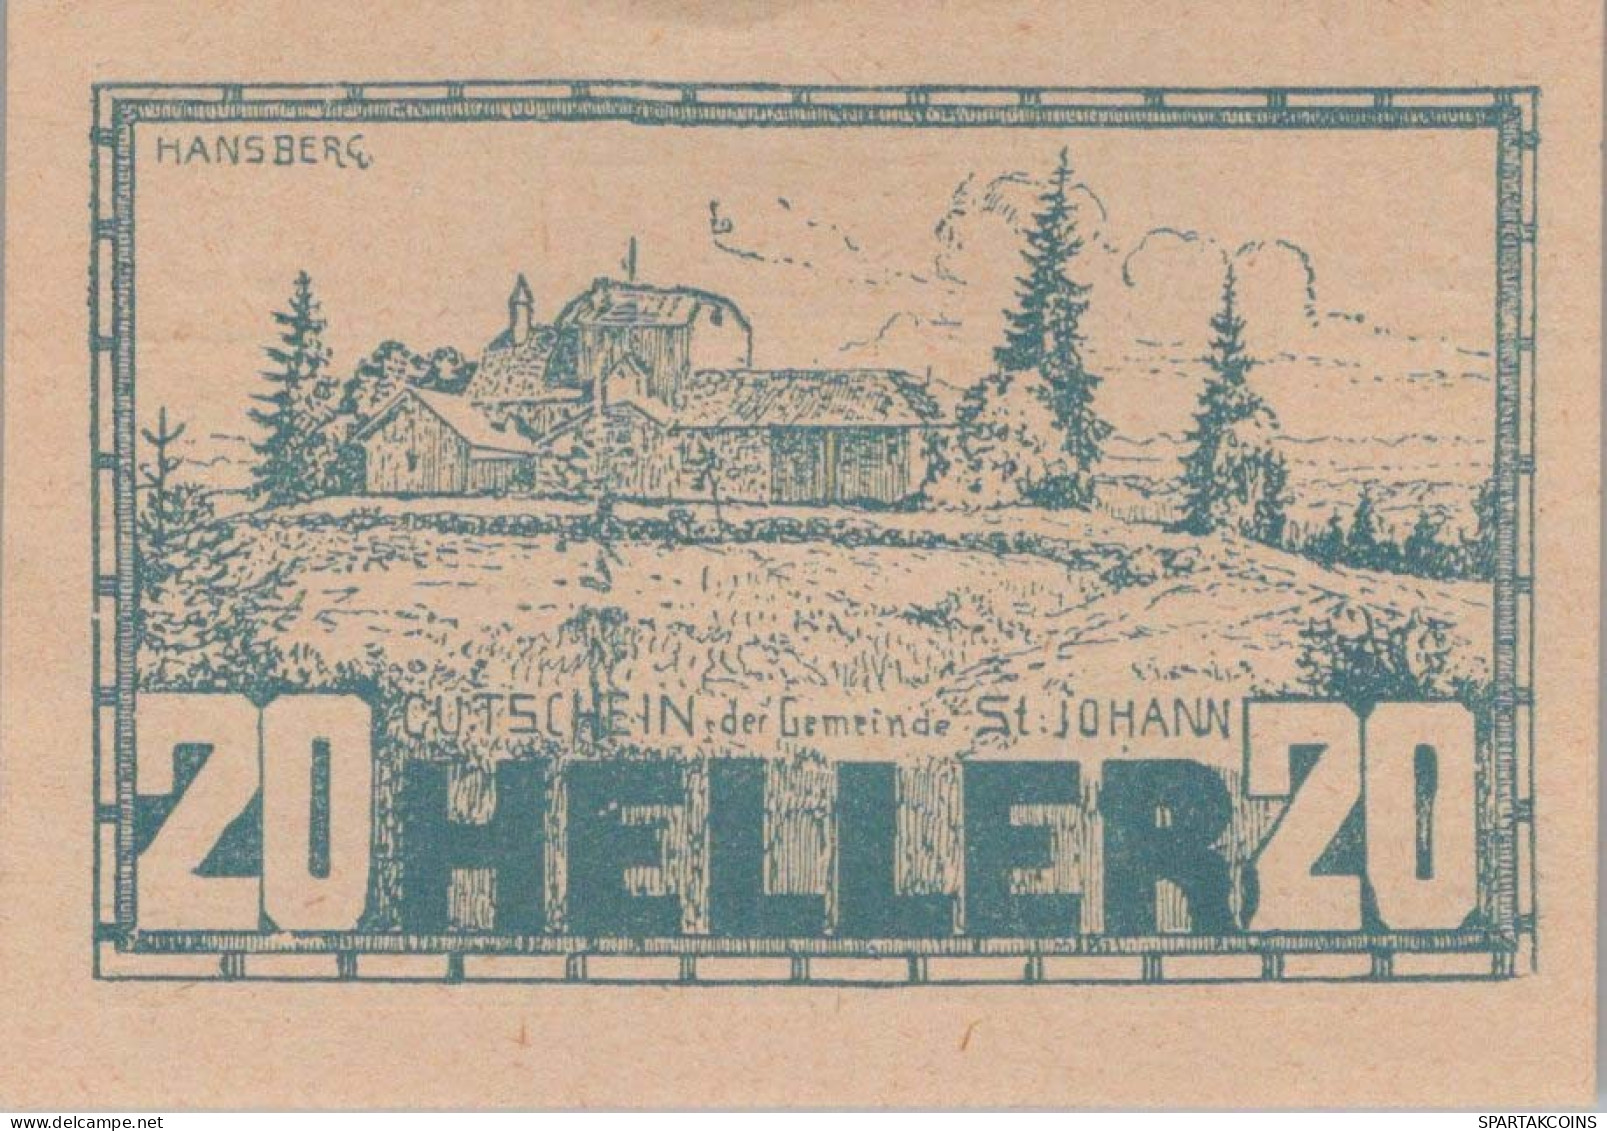 20 HELLER 1920 Stadt SANKT JOHANN AM WIMBERG Oberösterreich Österreich Notgeld Papiergeld Banknote #PG707 - Lokale Ausgaben